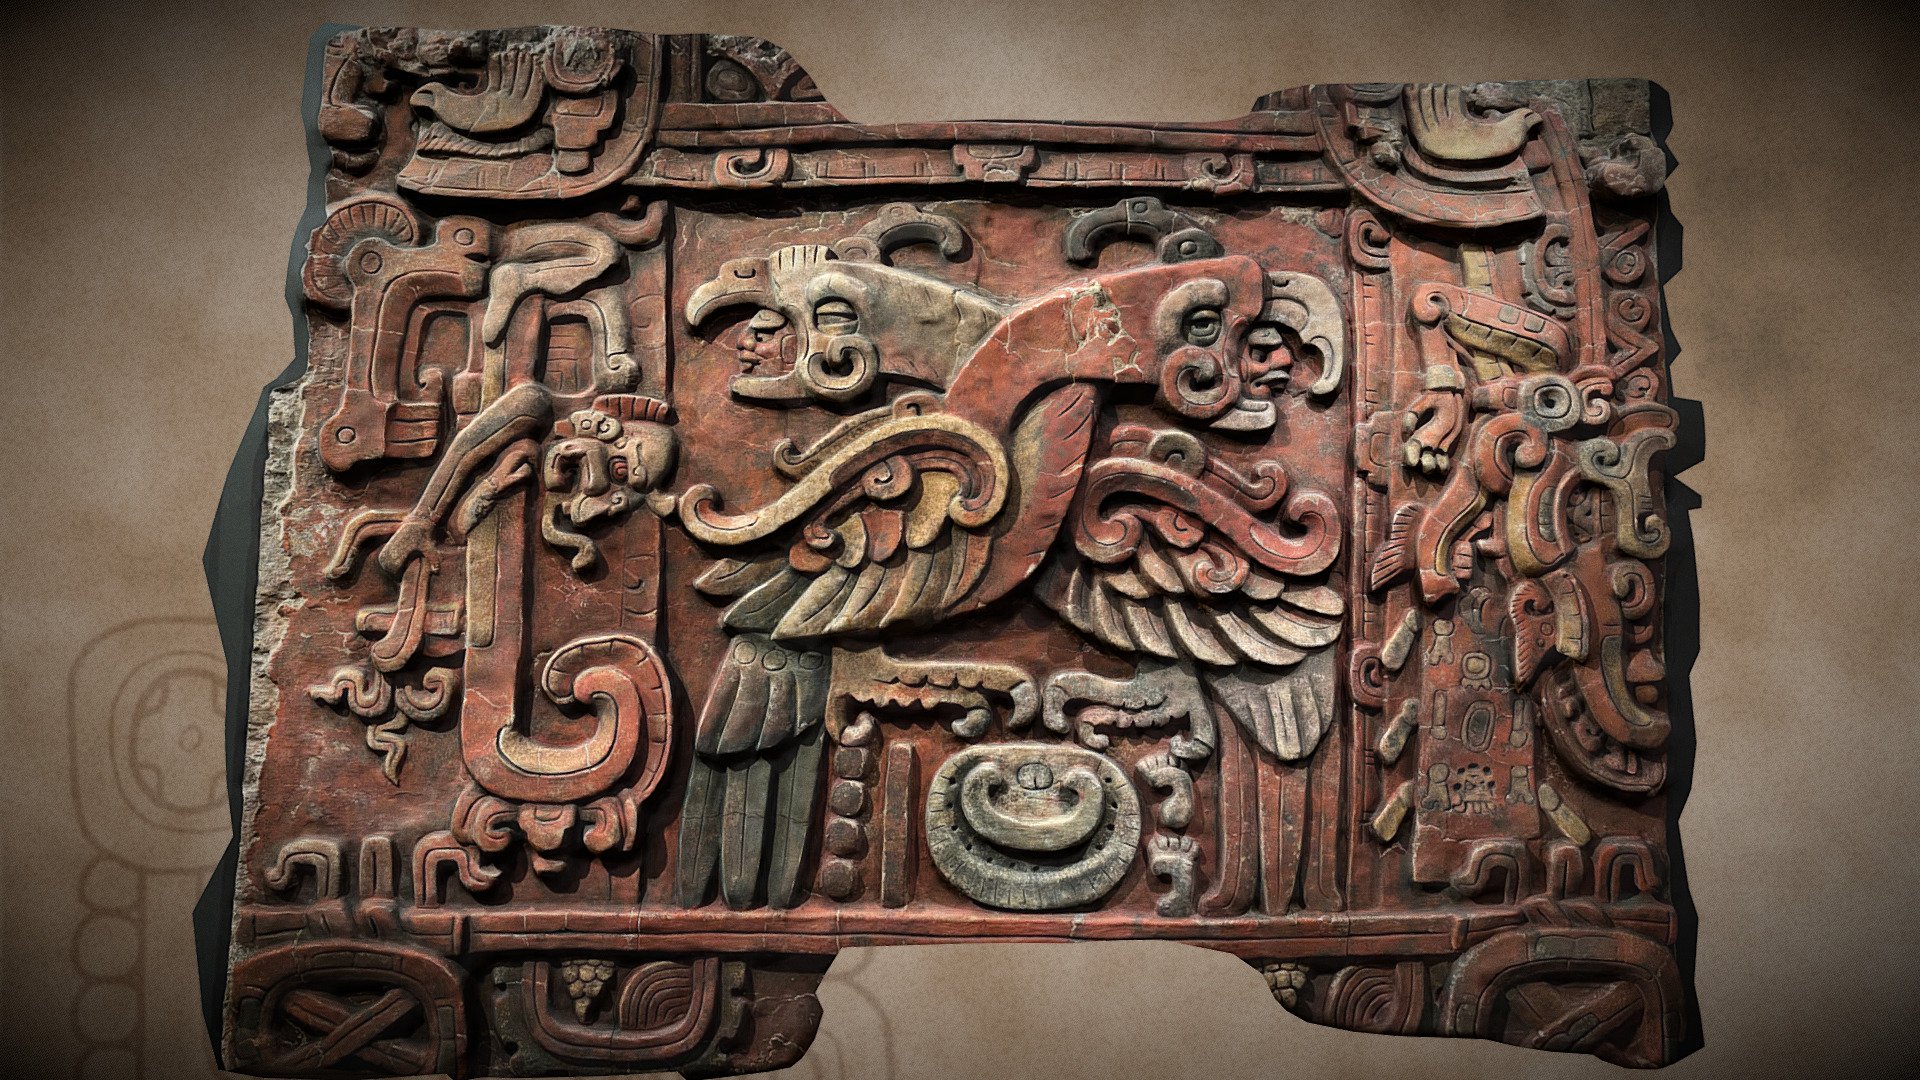 K’inich Yax K’uk’ Mo’(Resplandeciente Quetzal Guacamaya) (?-ca. 437 d.C.) Copán, Honduras 

El nombre del fundador de la dinastía de Copán está representado mediante una cara solar (k’inich), que está en el pico de ambas aves; el glifo de color verde resplandeciente (yax), encima de los cuellos de cada ave; el pico, los ojos y la cresta del ave de la izquierda indican que se trata de un quetzal (k’uk’); y el pico y las plumas de colores rojo, amarillo y azul indican que el ave de la derecha es una guacamaya (mo’). Fachada de la Estructura Margarita. Copán, Honduras. 

mas info William L. Fash

modelo tridimensional: Massimo Stefani (sastun@hotmail.it)

Foto de Fb

(replica hecha en el 2012) - CPN - Panel Estr. Margarita. Copán, Honduras - 3D model by Archeografica_3D (@sastun1962) 3d model